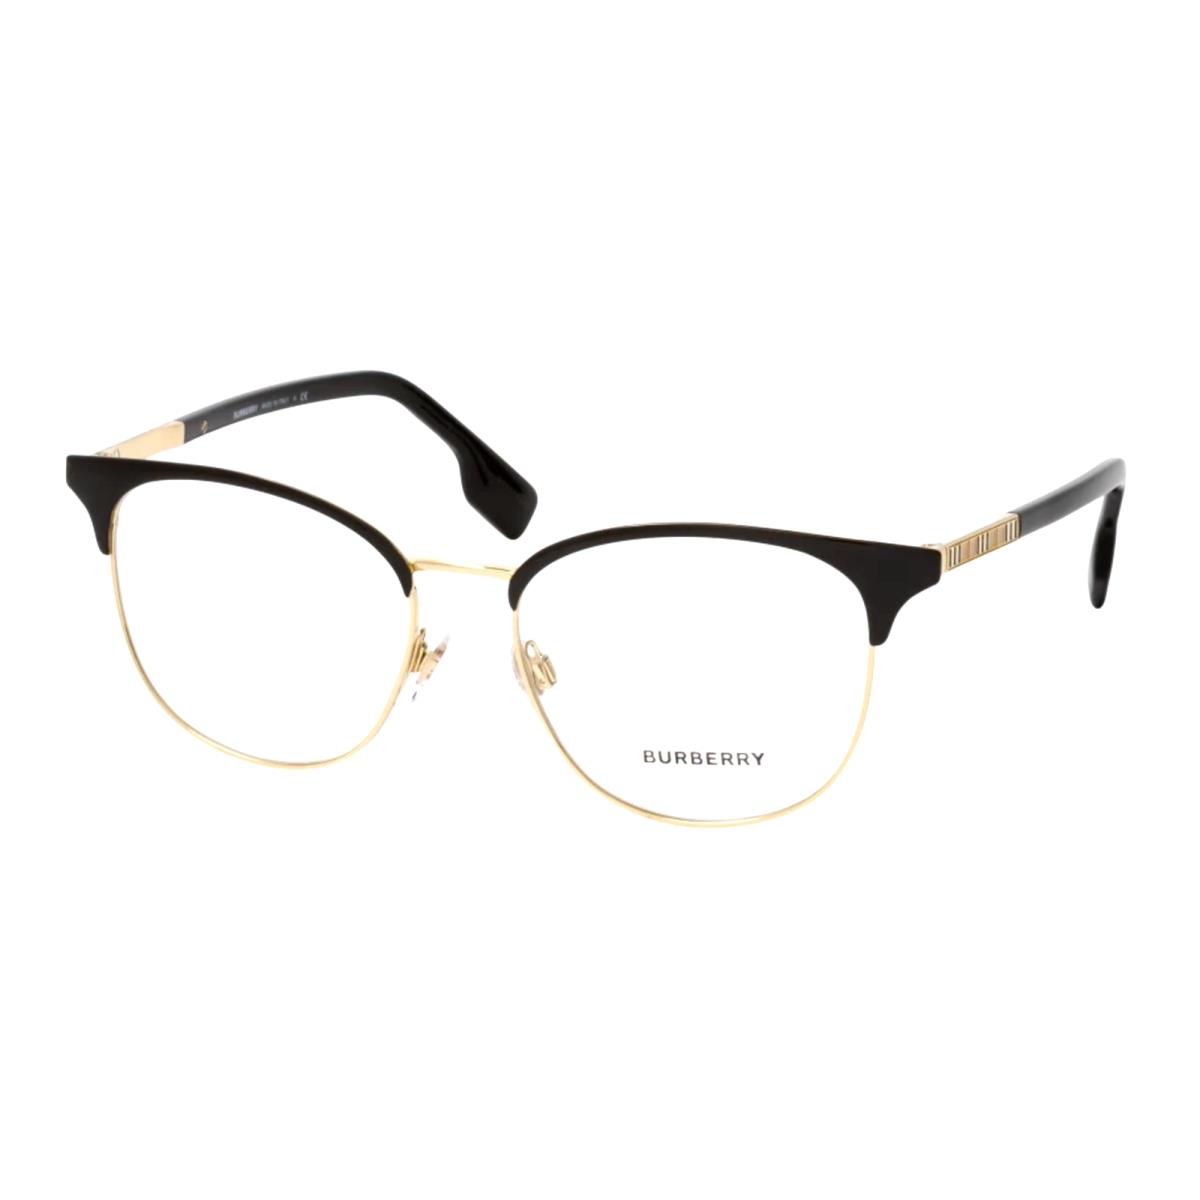 Burberry Sophia Eyeglasses B 1355 1109 52-16 140 Black Light Gold Frames